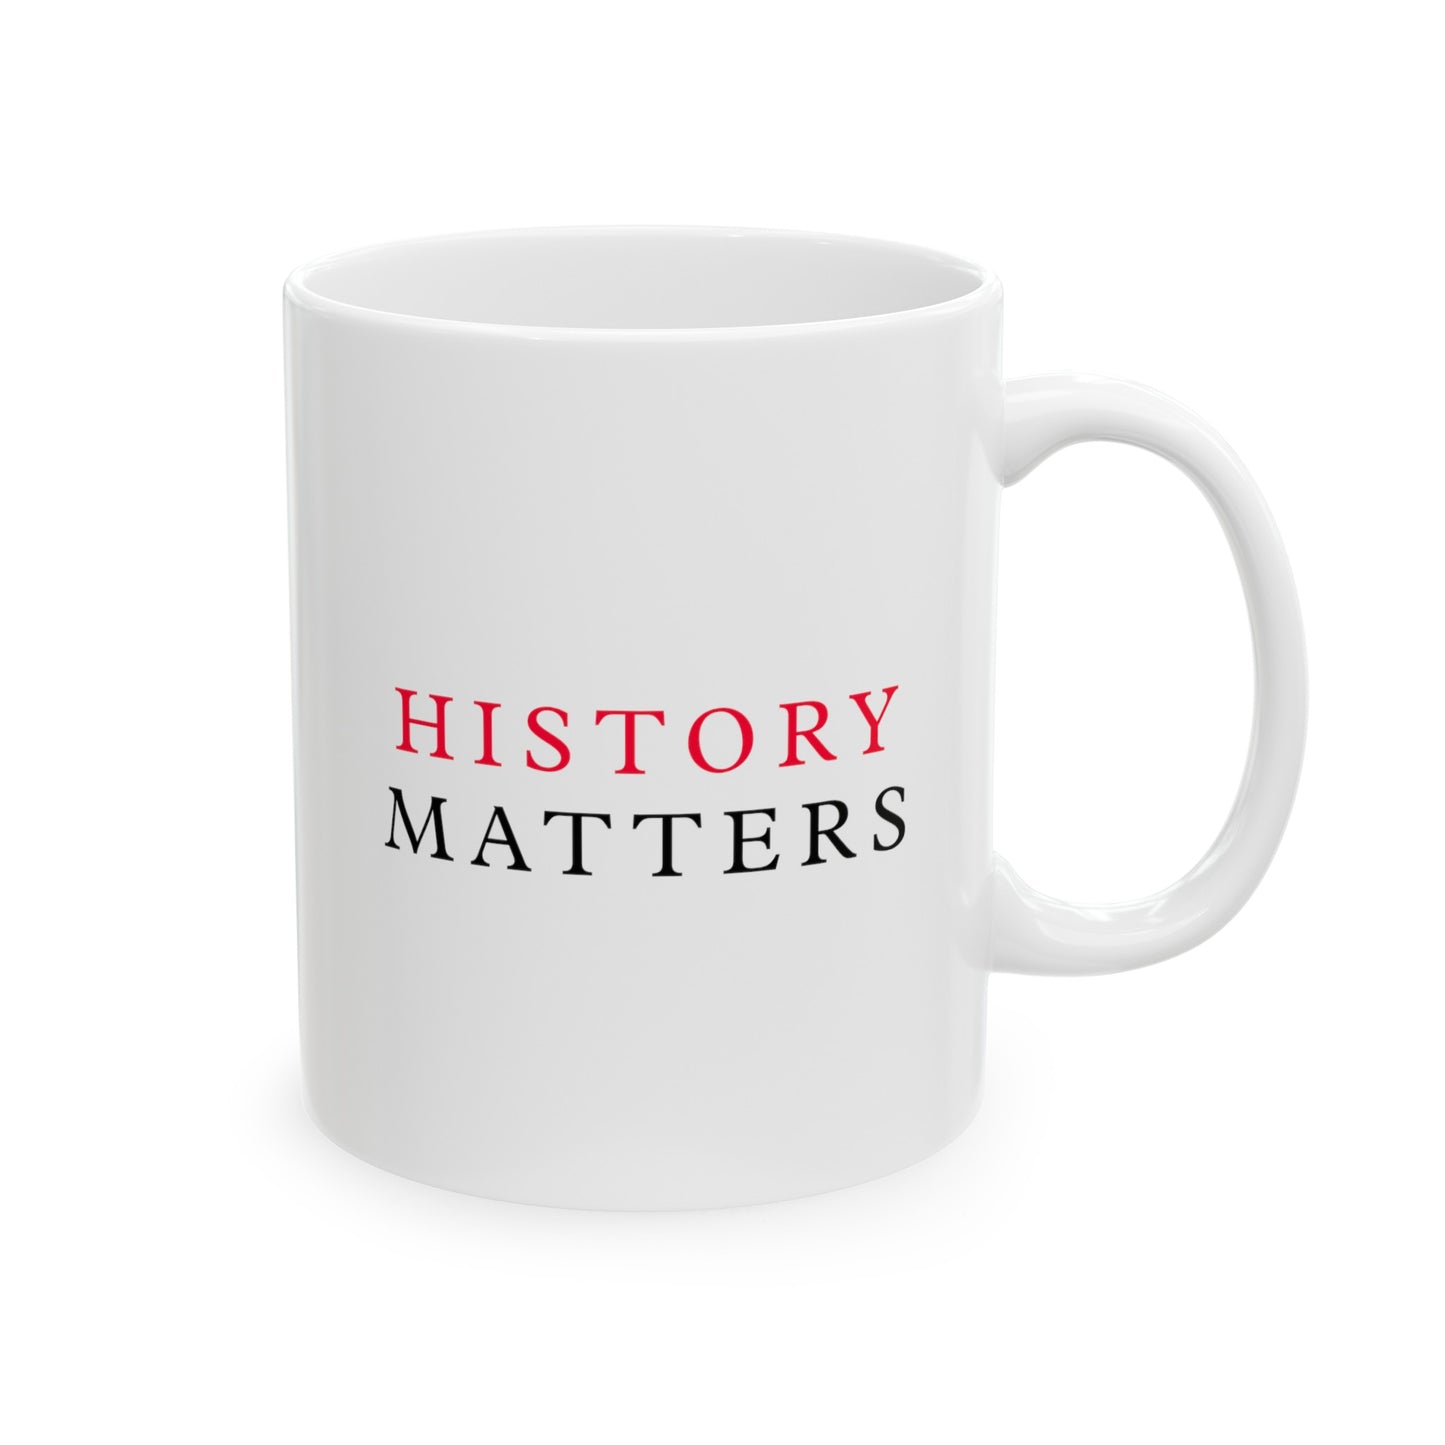 History Matters White Ceramic Mug (11oz, 15oz)